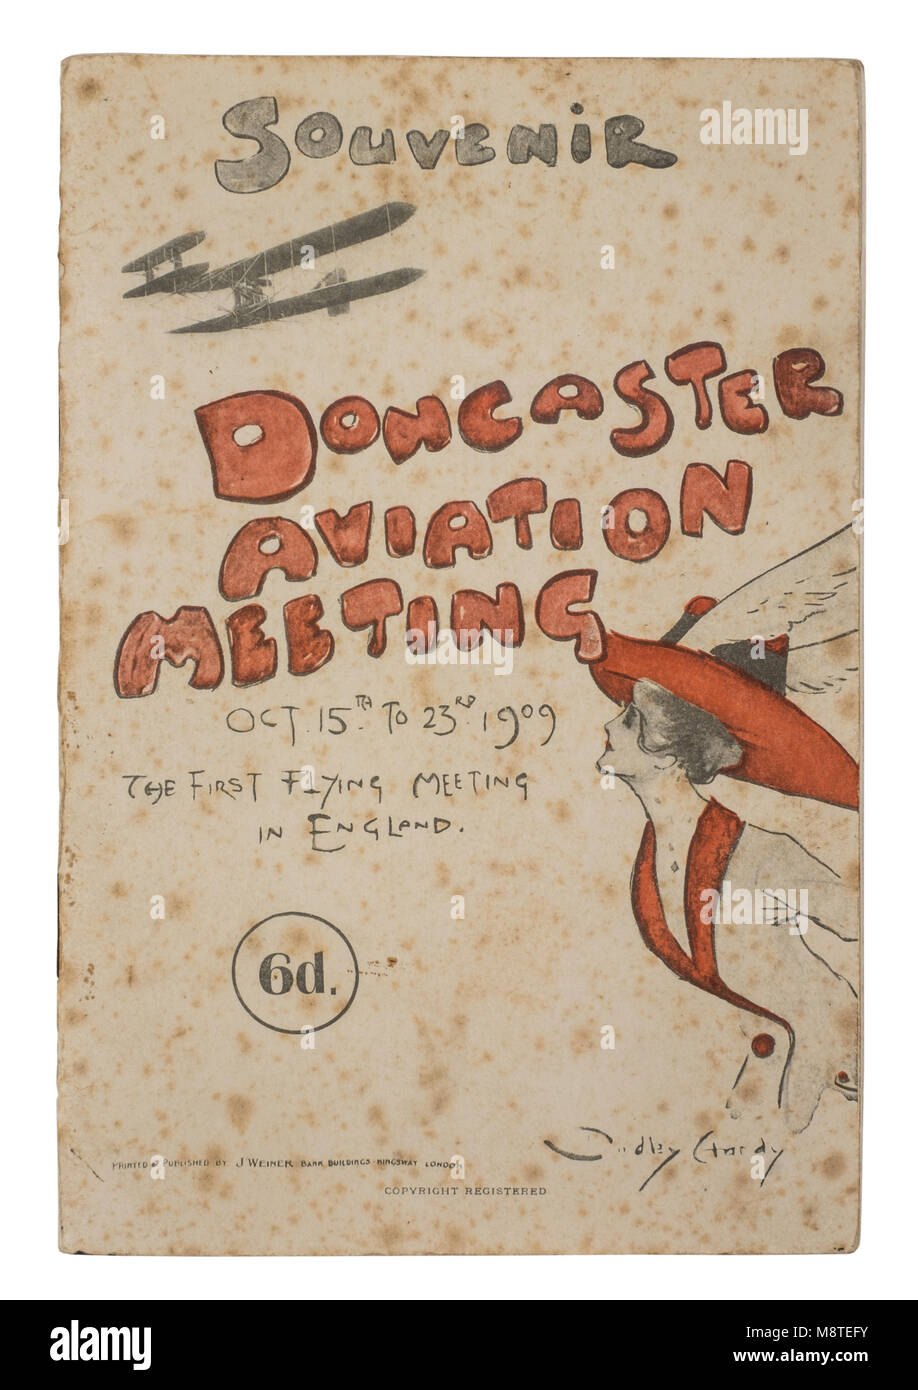 Raro 1909 Programa de recuerdo de la aviación reunidos en Doncaster. Se celebró del 15 al 23 de octubre de 1909, este fue el primer vuelo oficial celebrada en Inglaterra. Foto de stock